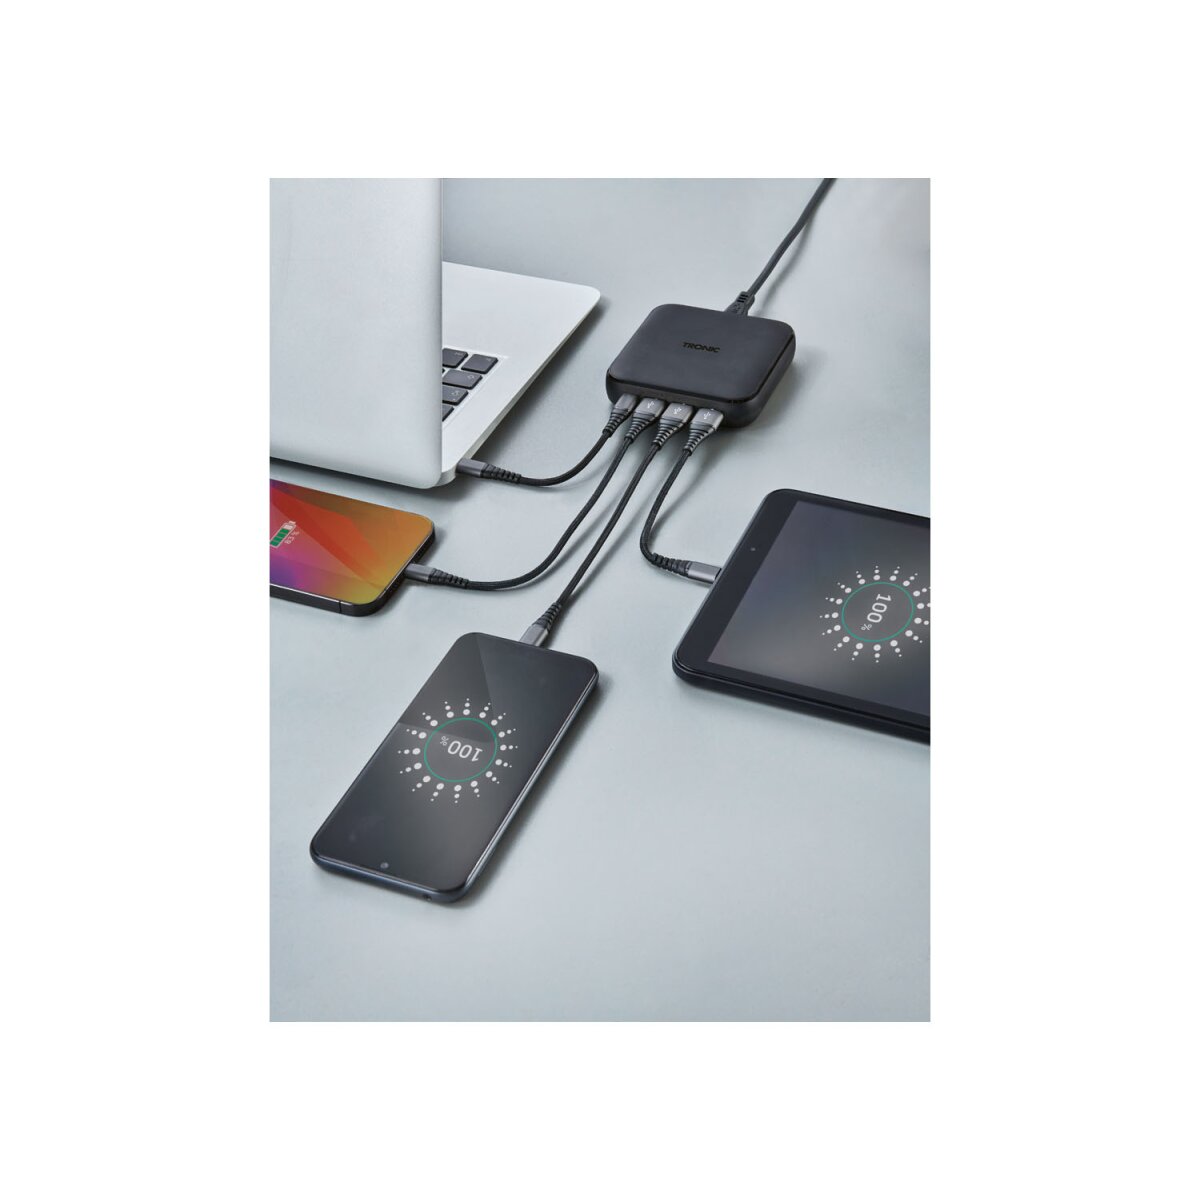 € 24,99 USB-Ladegerät, W Anschlüsse, TRONIC® neuwertig, 65 B-Ware PD, 4 -